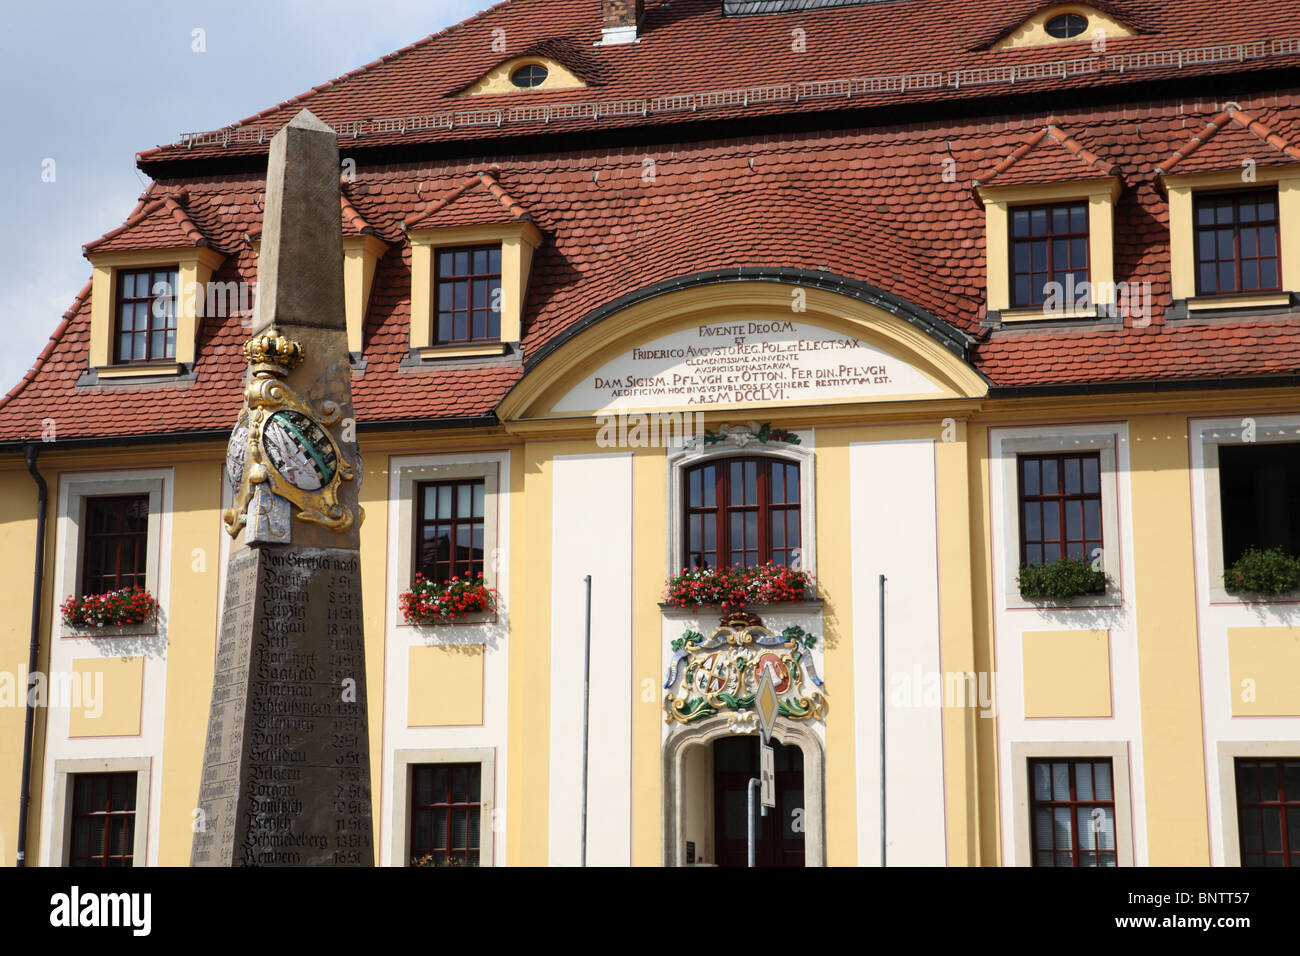 Le 18e siècle Town Hall ou Rathaus dans Strehla, une ville sur l'Elbe, dans le quartier de Meissen, Allemagne. Banque D'Images